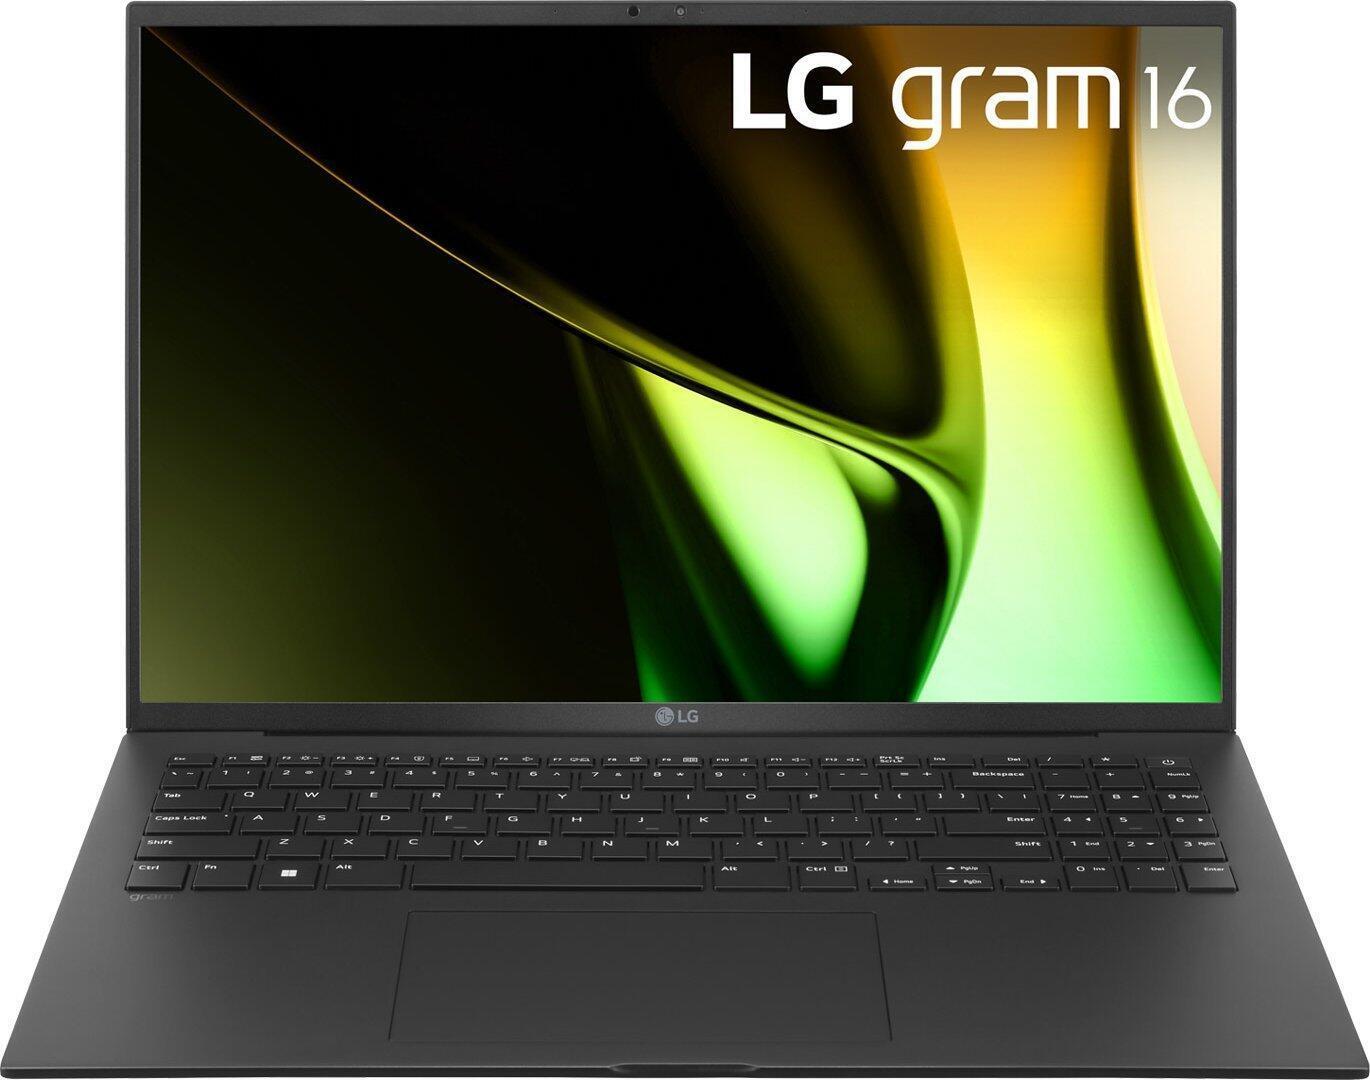 LG gram 16 Core Ultra 7 155H 32GB/2TB SSD Win11 grau 16Z90S-G.AD7CG -  Intel Core Ultra 7 155H Prozessor (bis zu 4,9 GHz) - Hexadeca-Core  40,6 cm (16) QHD 16:10 Display (entspiegelt) - Webcam  32 GB RAM - 2 TB SSD  Intel Arc Grafik - HDMI - 2x Thunderbolt 4 - WLAN-ax - BT  Windows 11 Home 64 Bit - Akkulaufzeit bis 0 h - 1,2 kg (16Z90S-G.AD7CG) von LG